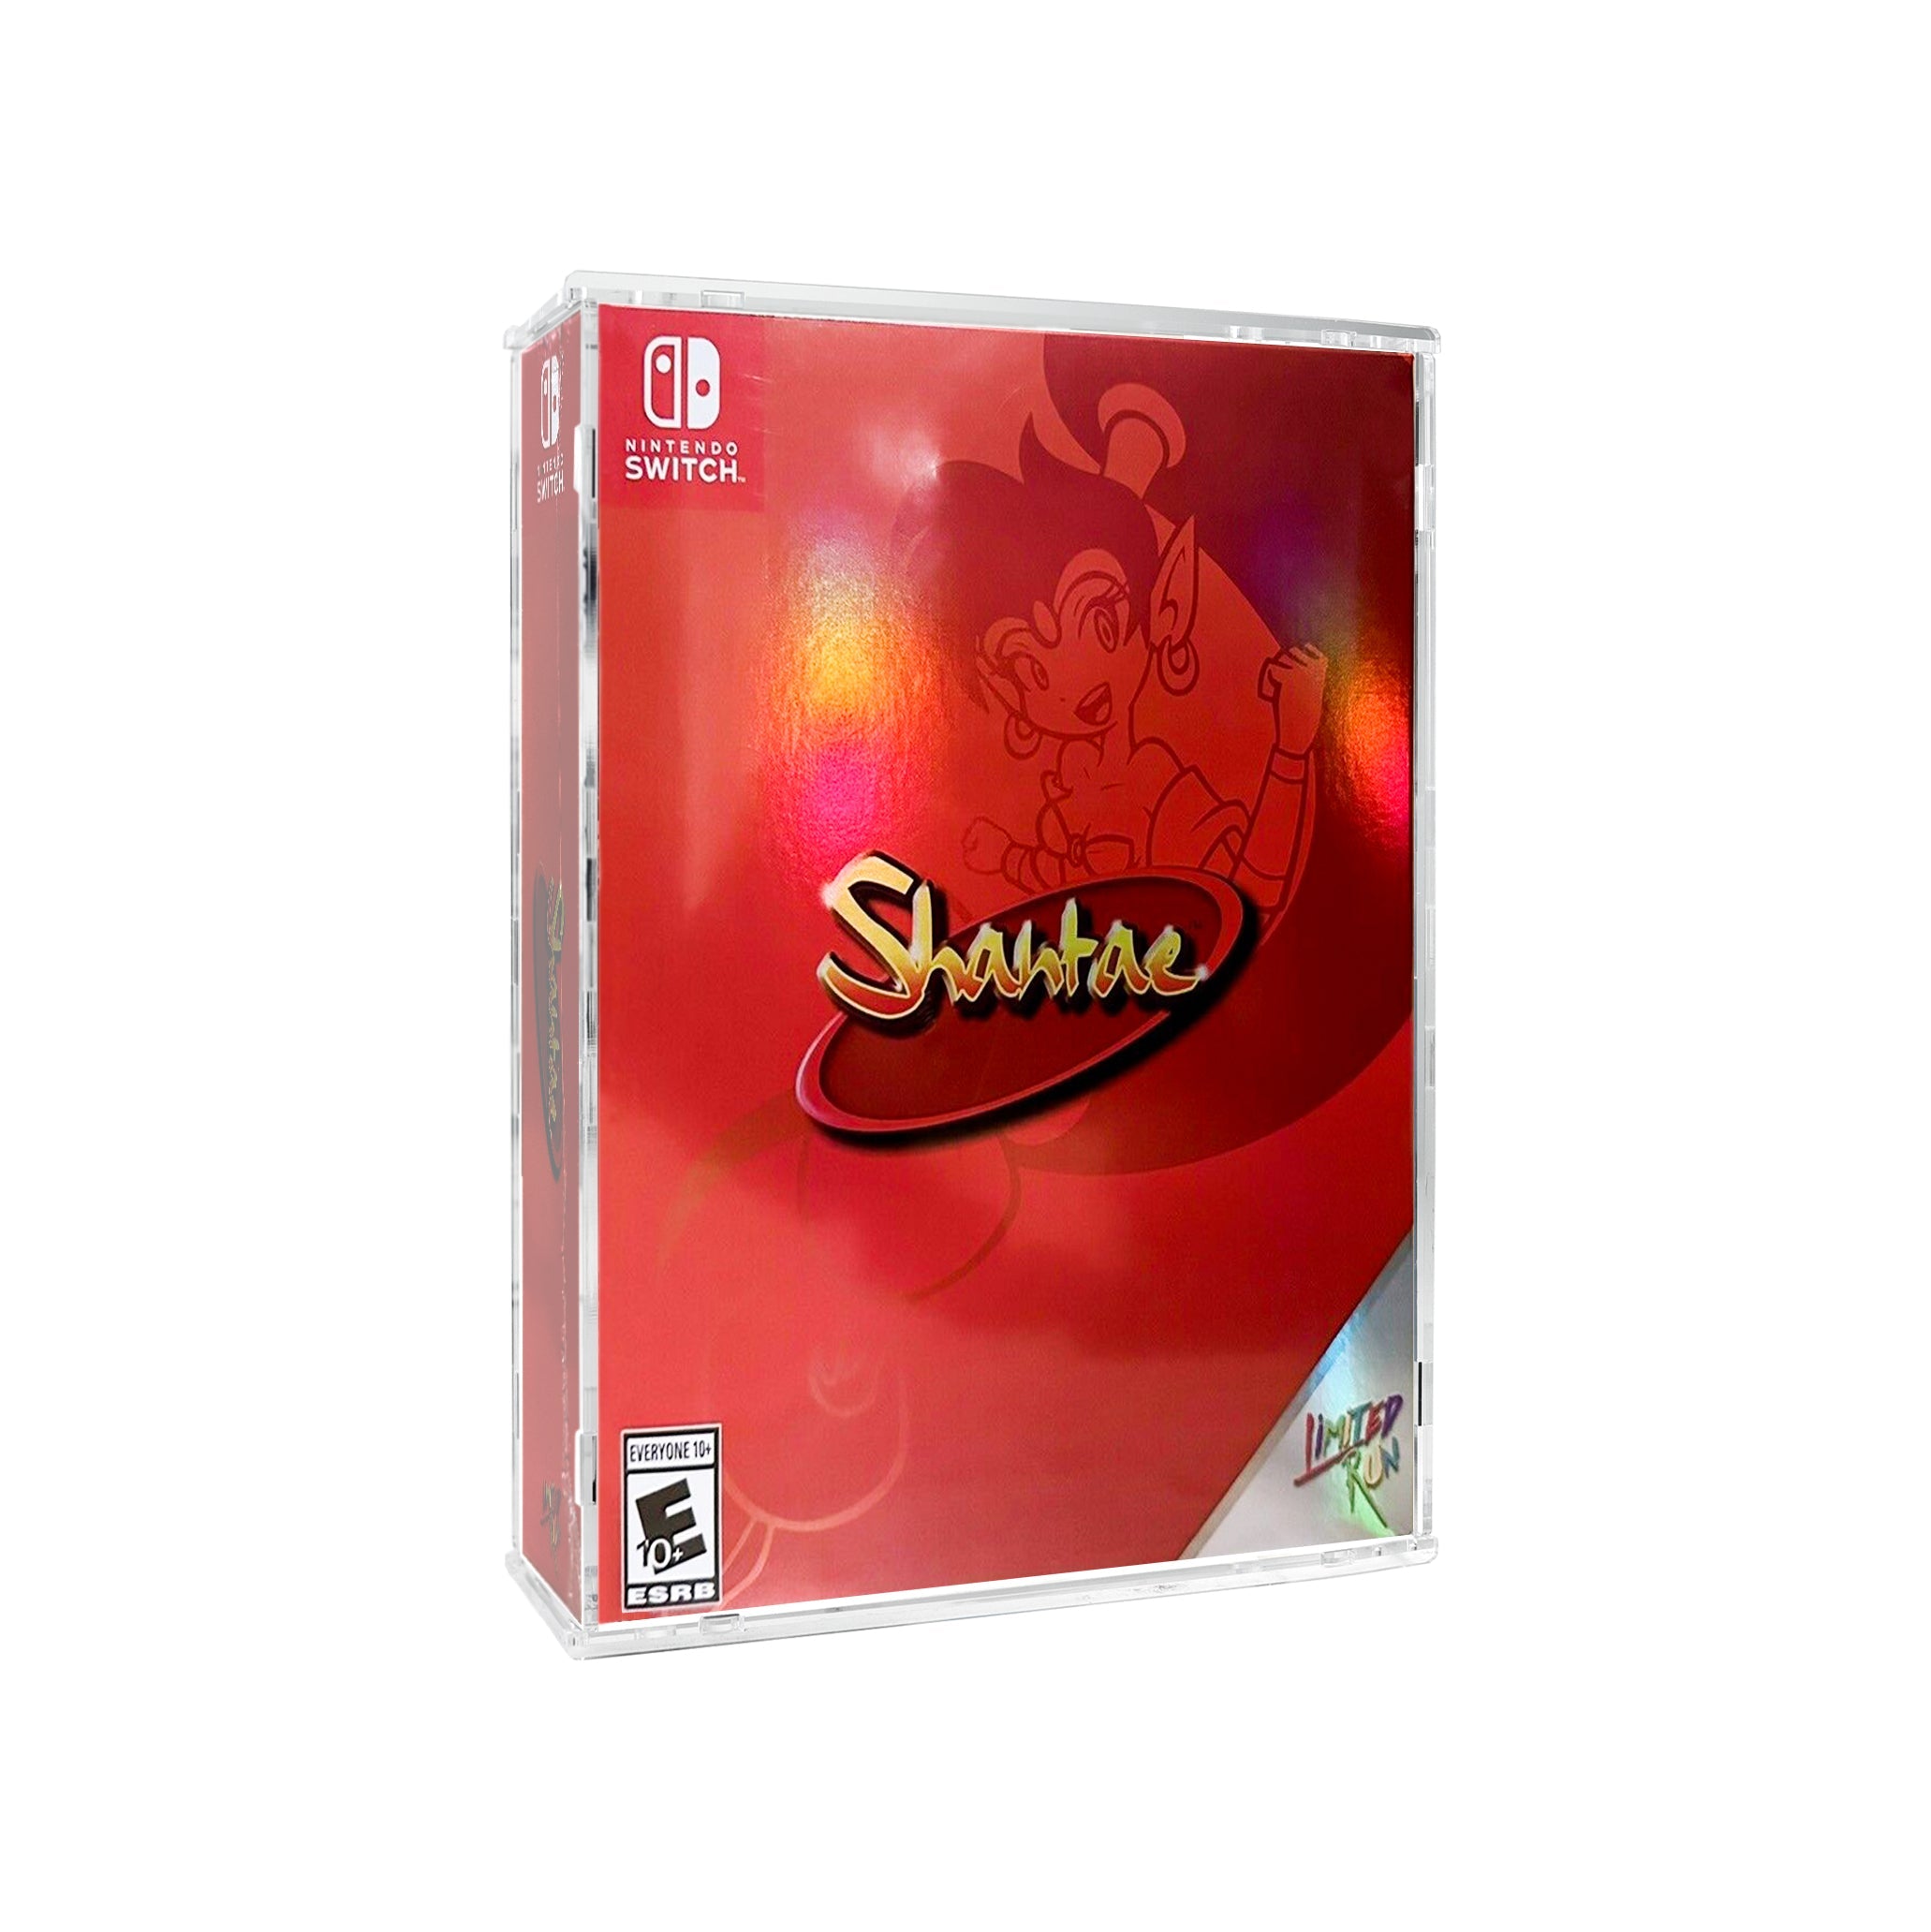 Protector para Shantae™ Collectors - Limited Run-acrilico-exhibidor-caja-case-Decolecto